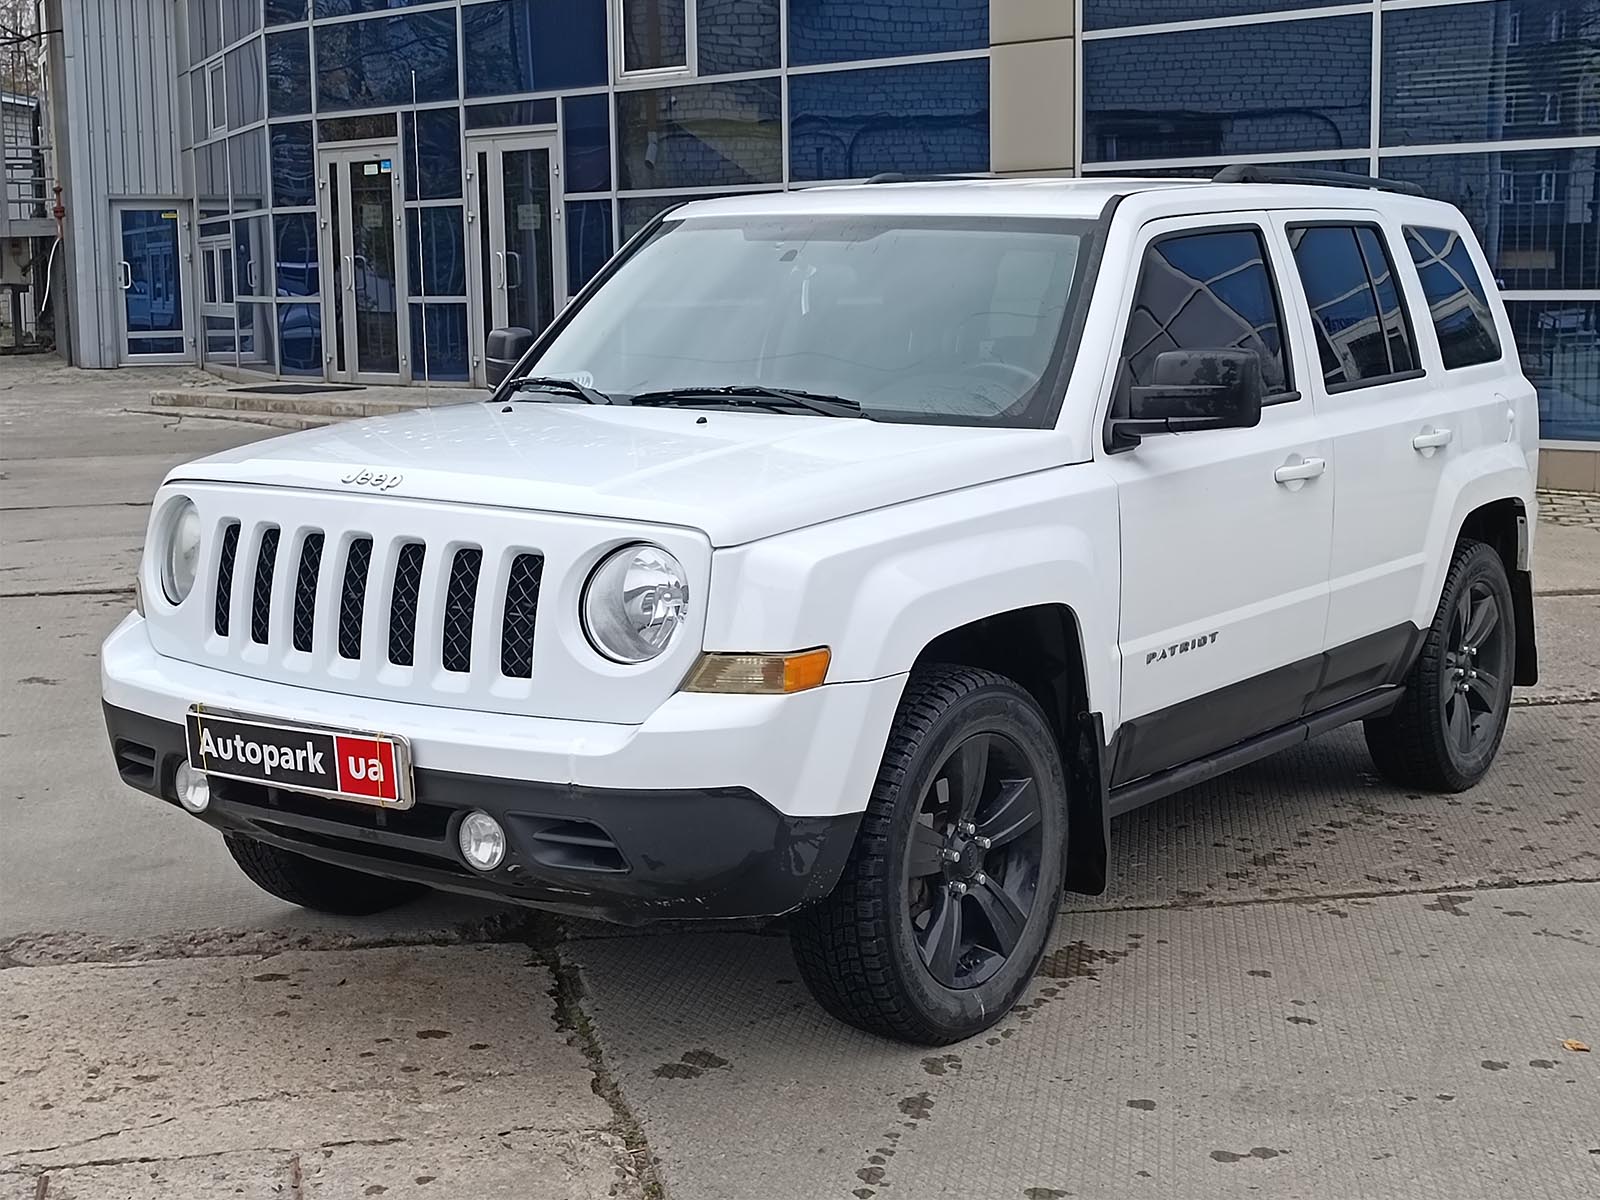 Автомобили Jeep Patriot купить в Украине, цена на б/у автомобили Jeep  Patriot в наличии, продажа подержанных авто в Autopark